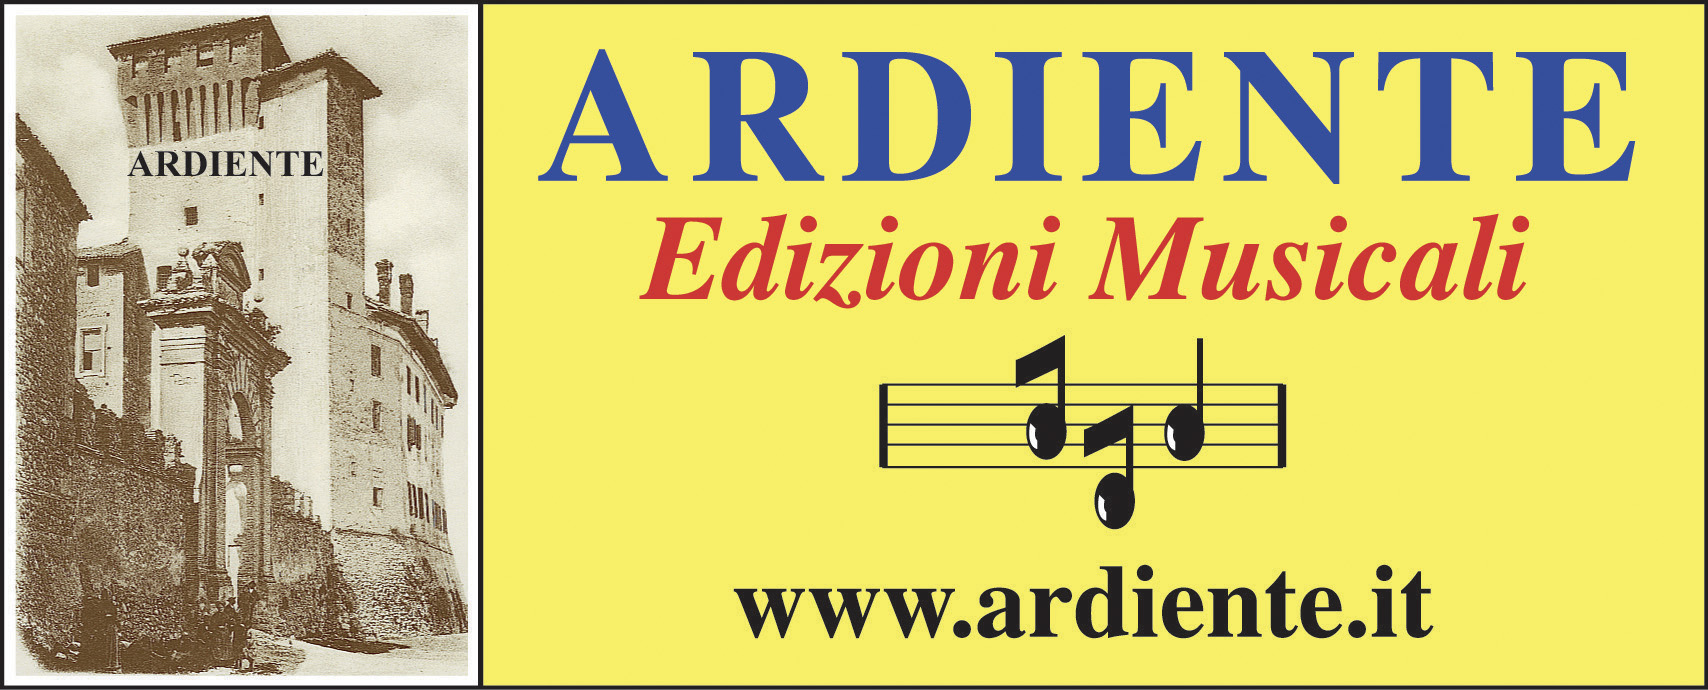 Ardiente Edizioni Musicali 